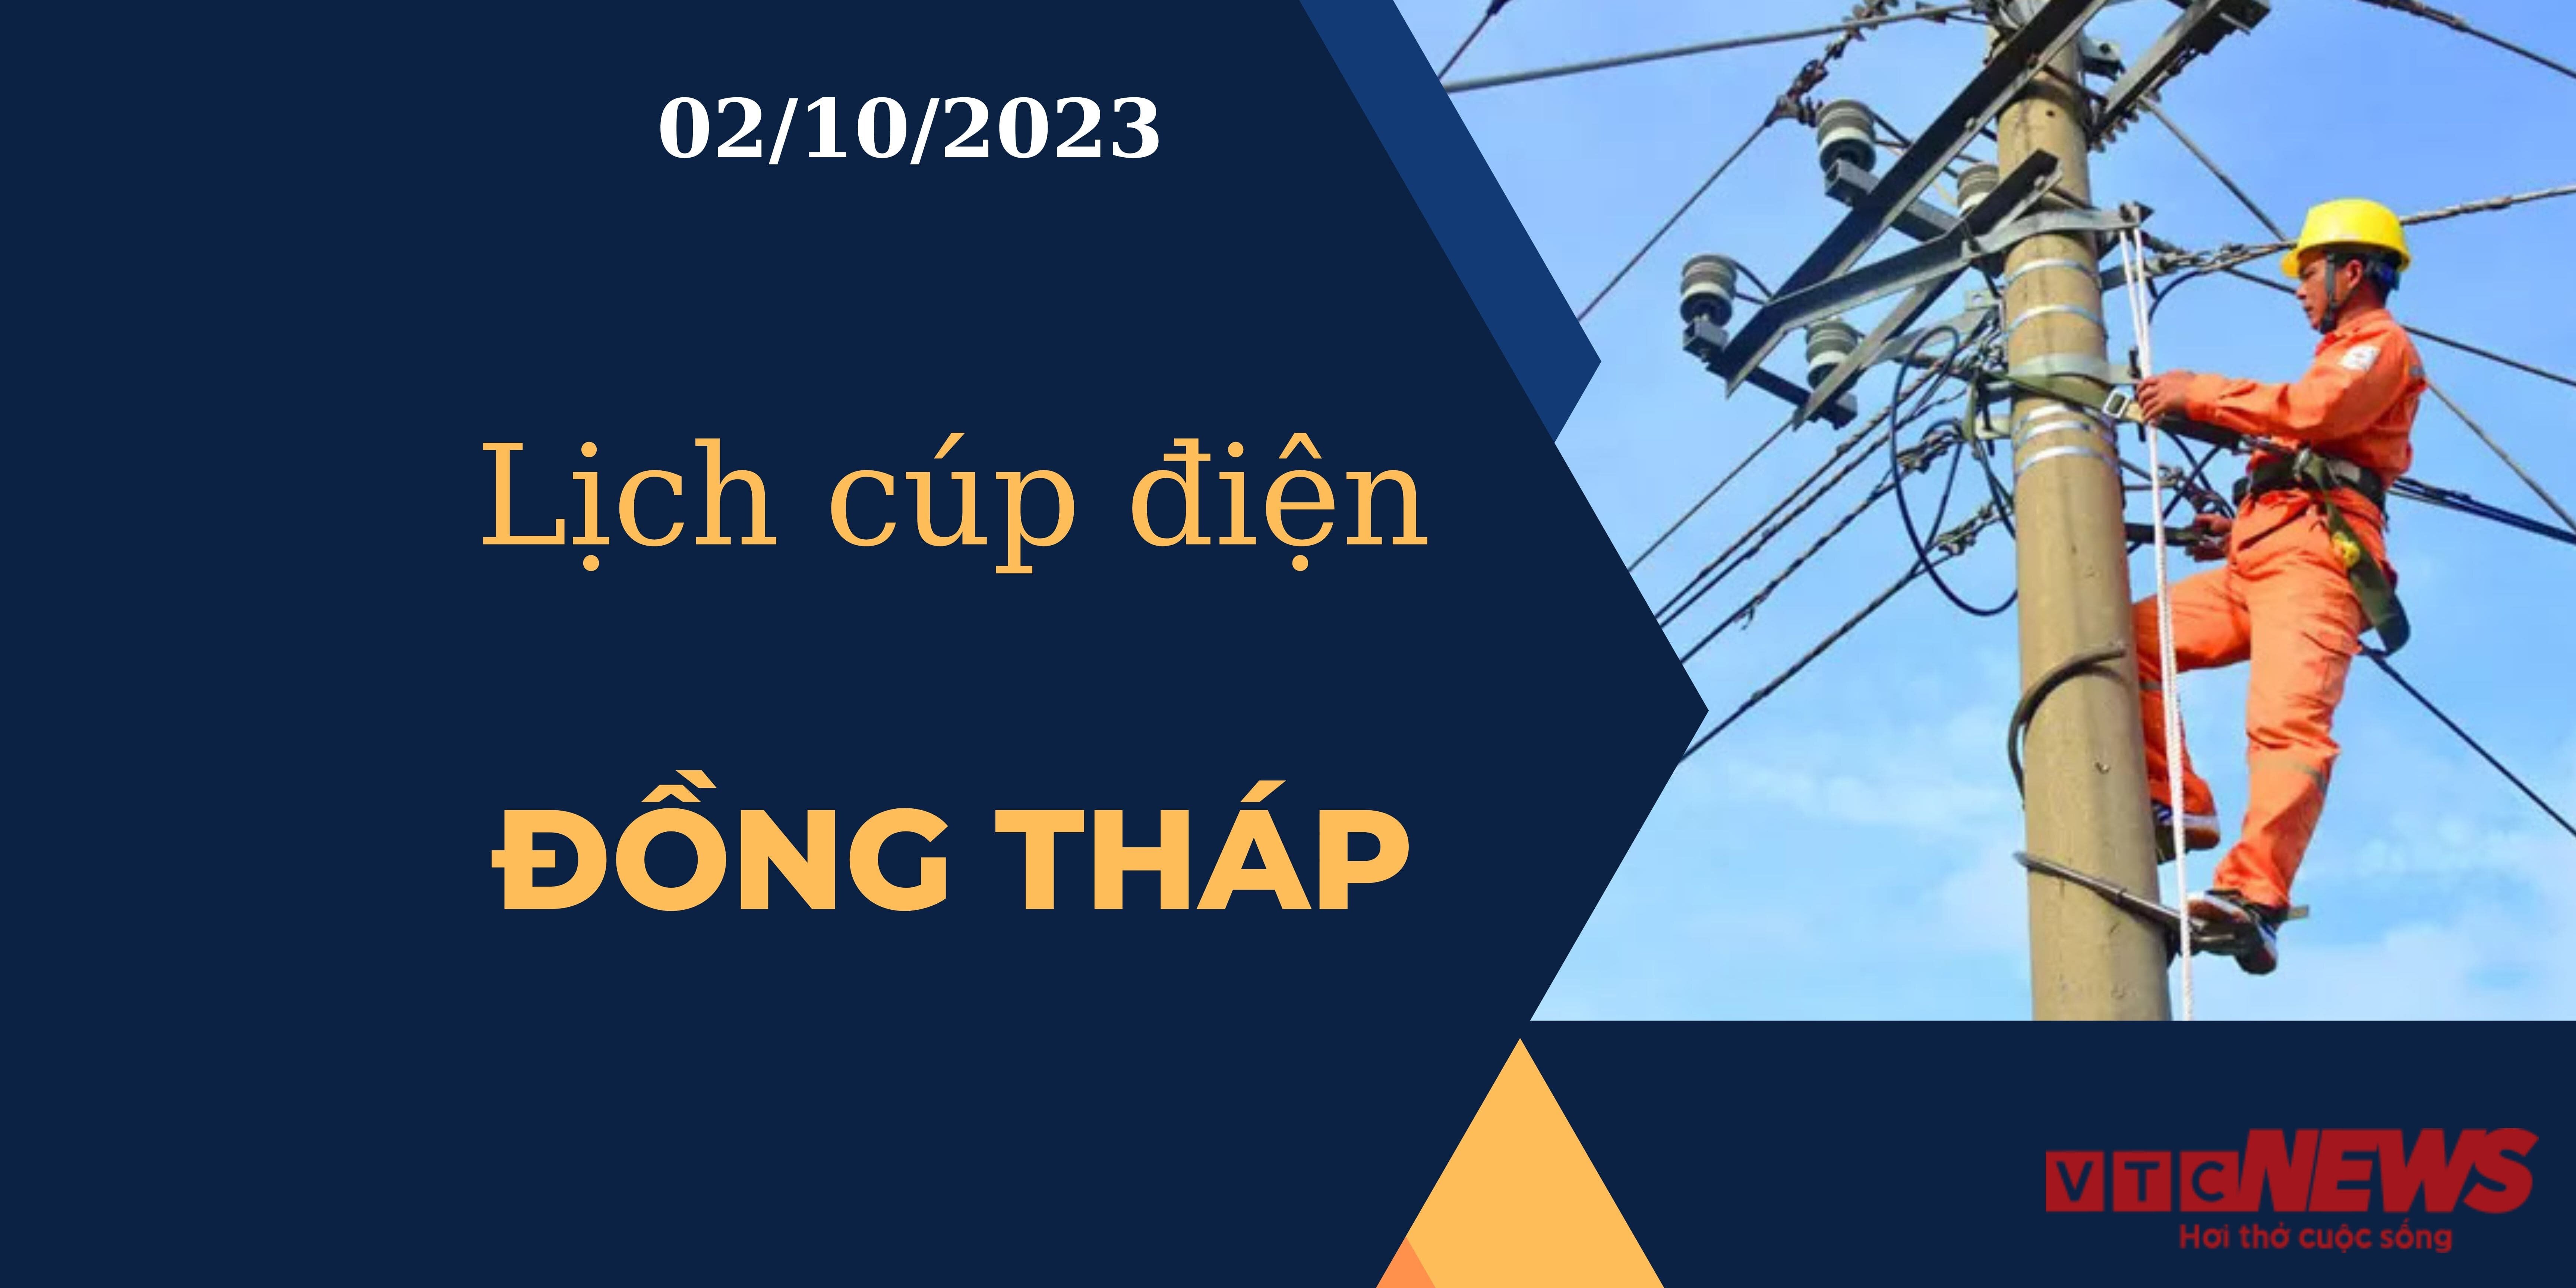 Lịch cúp điện Đồng Tháp ngày 02/10/2023